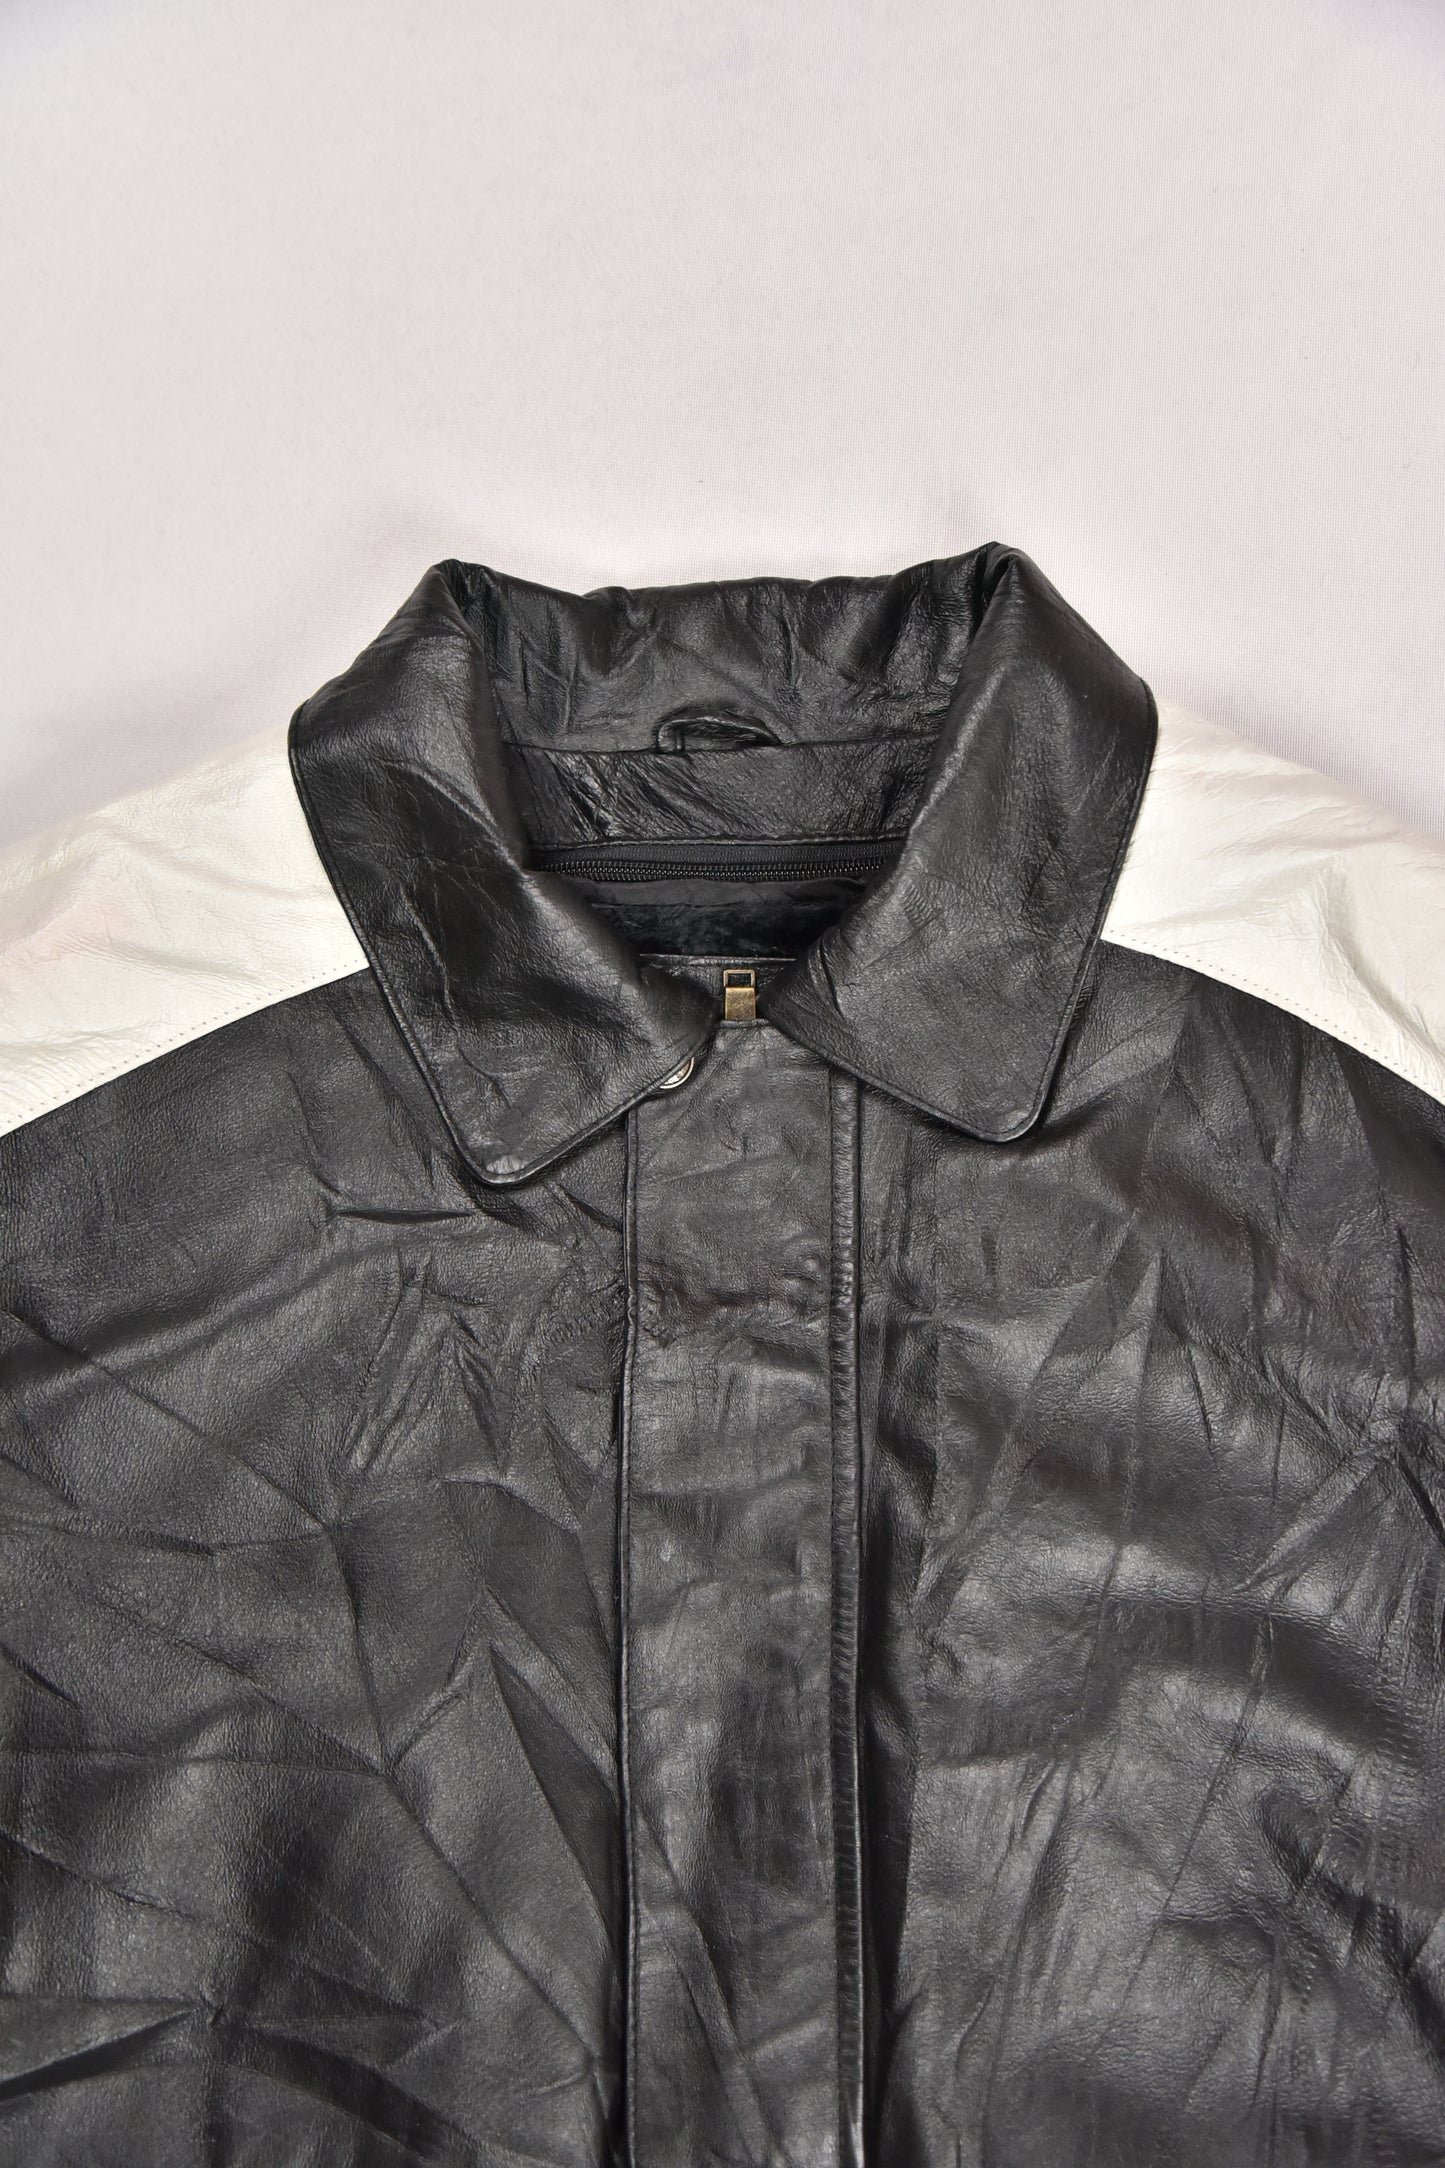 Vintage "USA" leather jacket / M